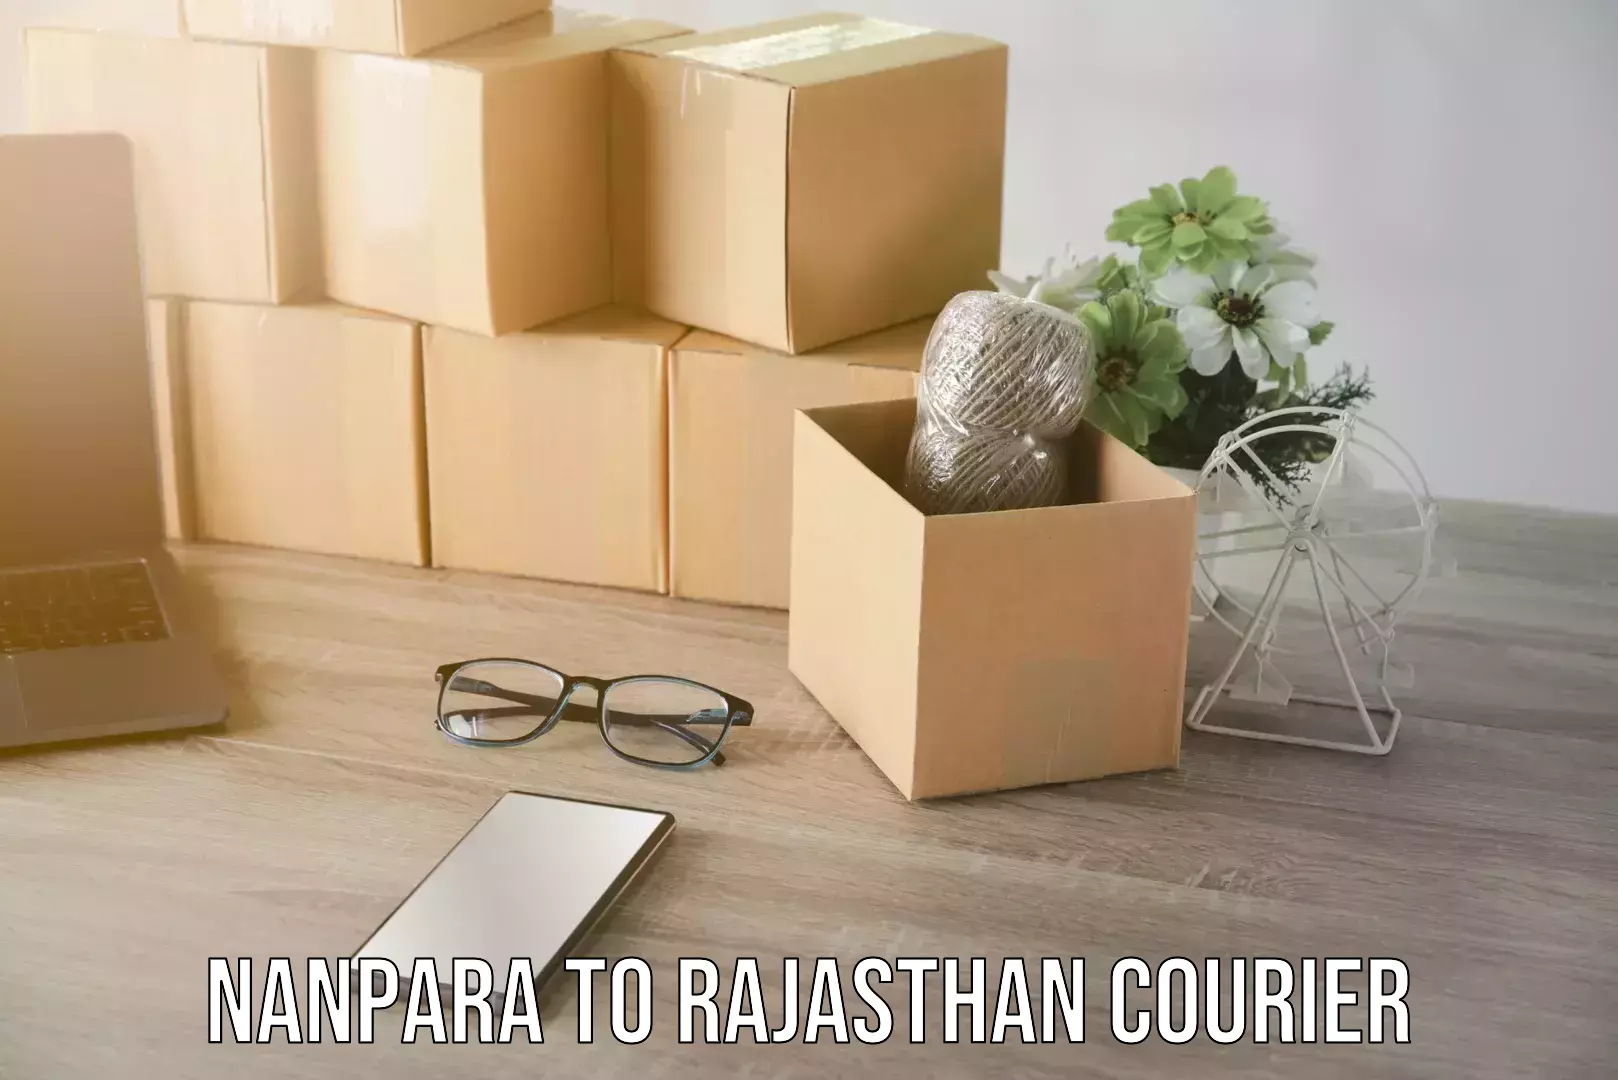 Home shifting experts Nanpara to Rajasthan